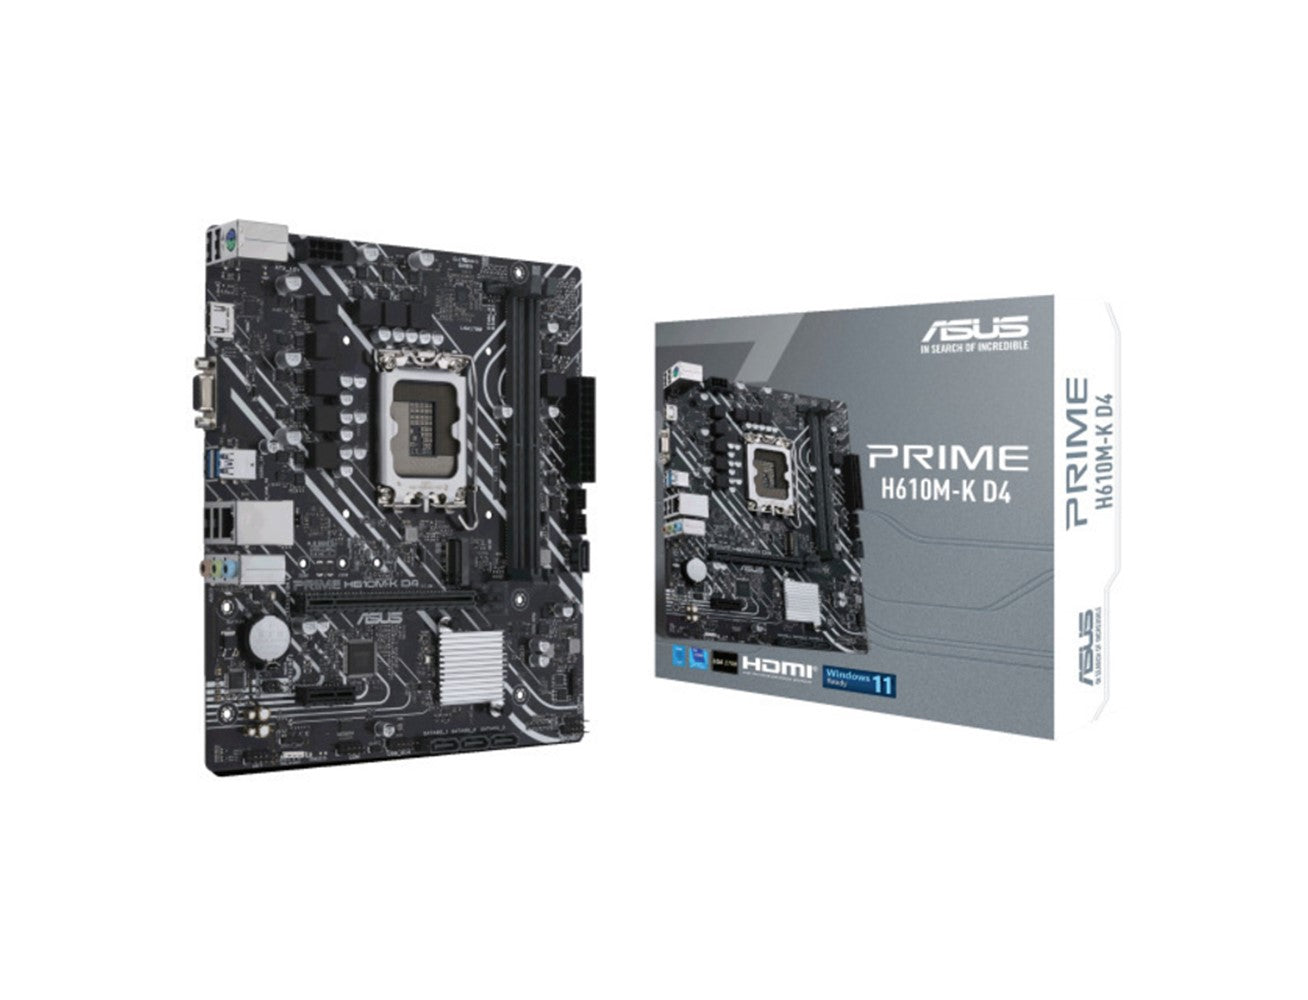 Buy Asus Prime H610M-K D4 Gaming Motherboard | Blink Saudi